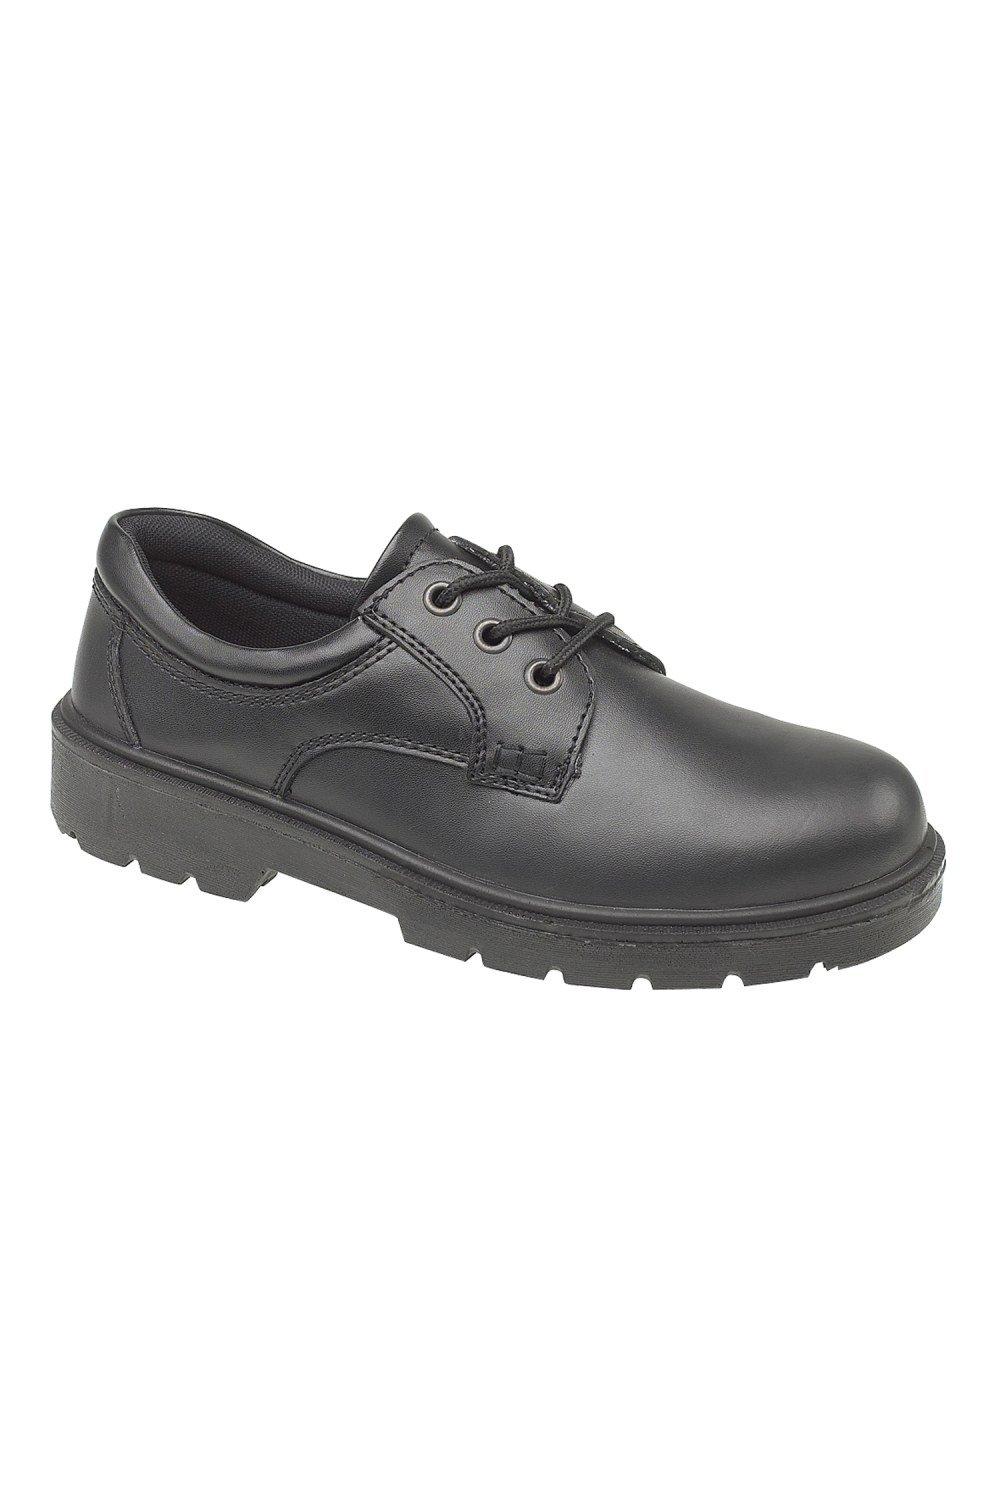 цена Стальные композитные туфли FS38c Amblers, черный